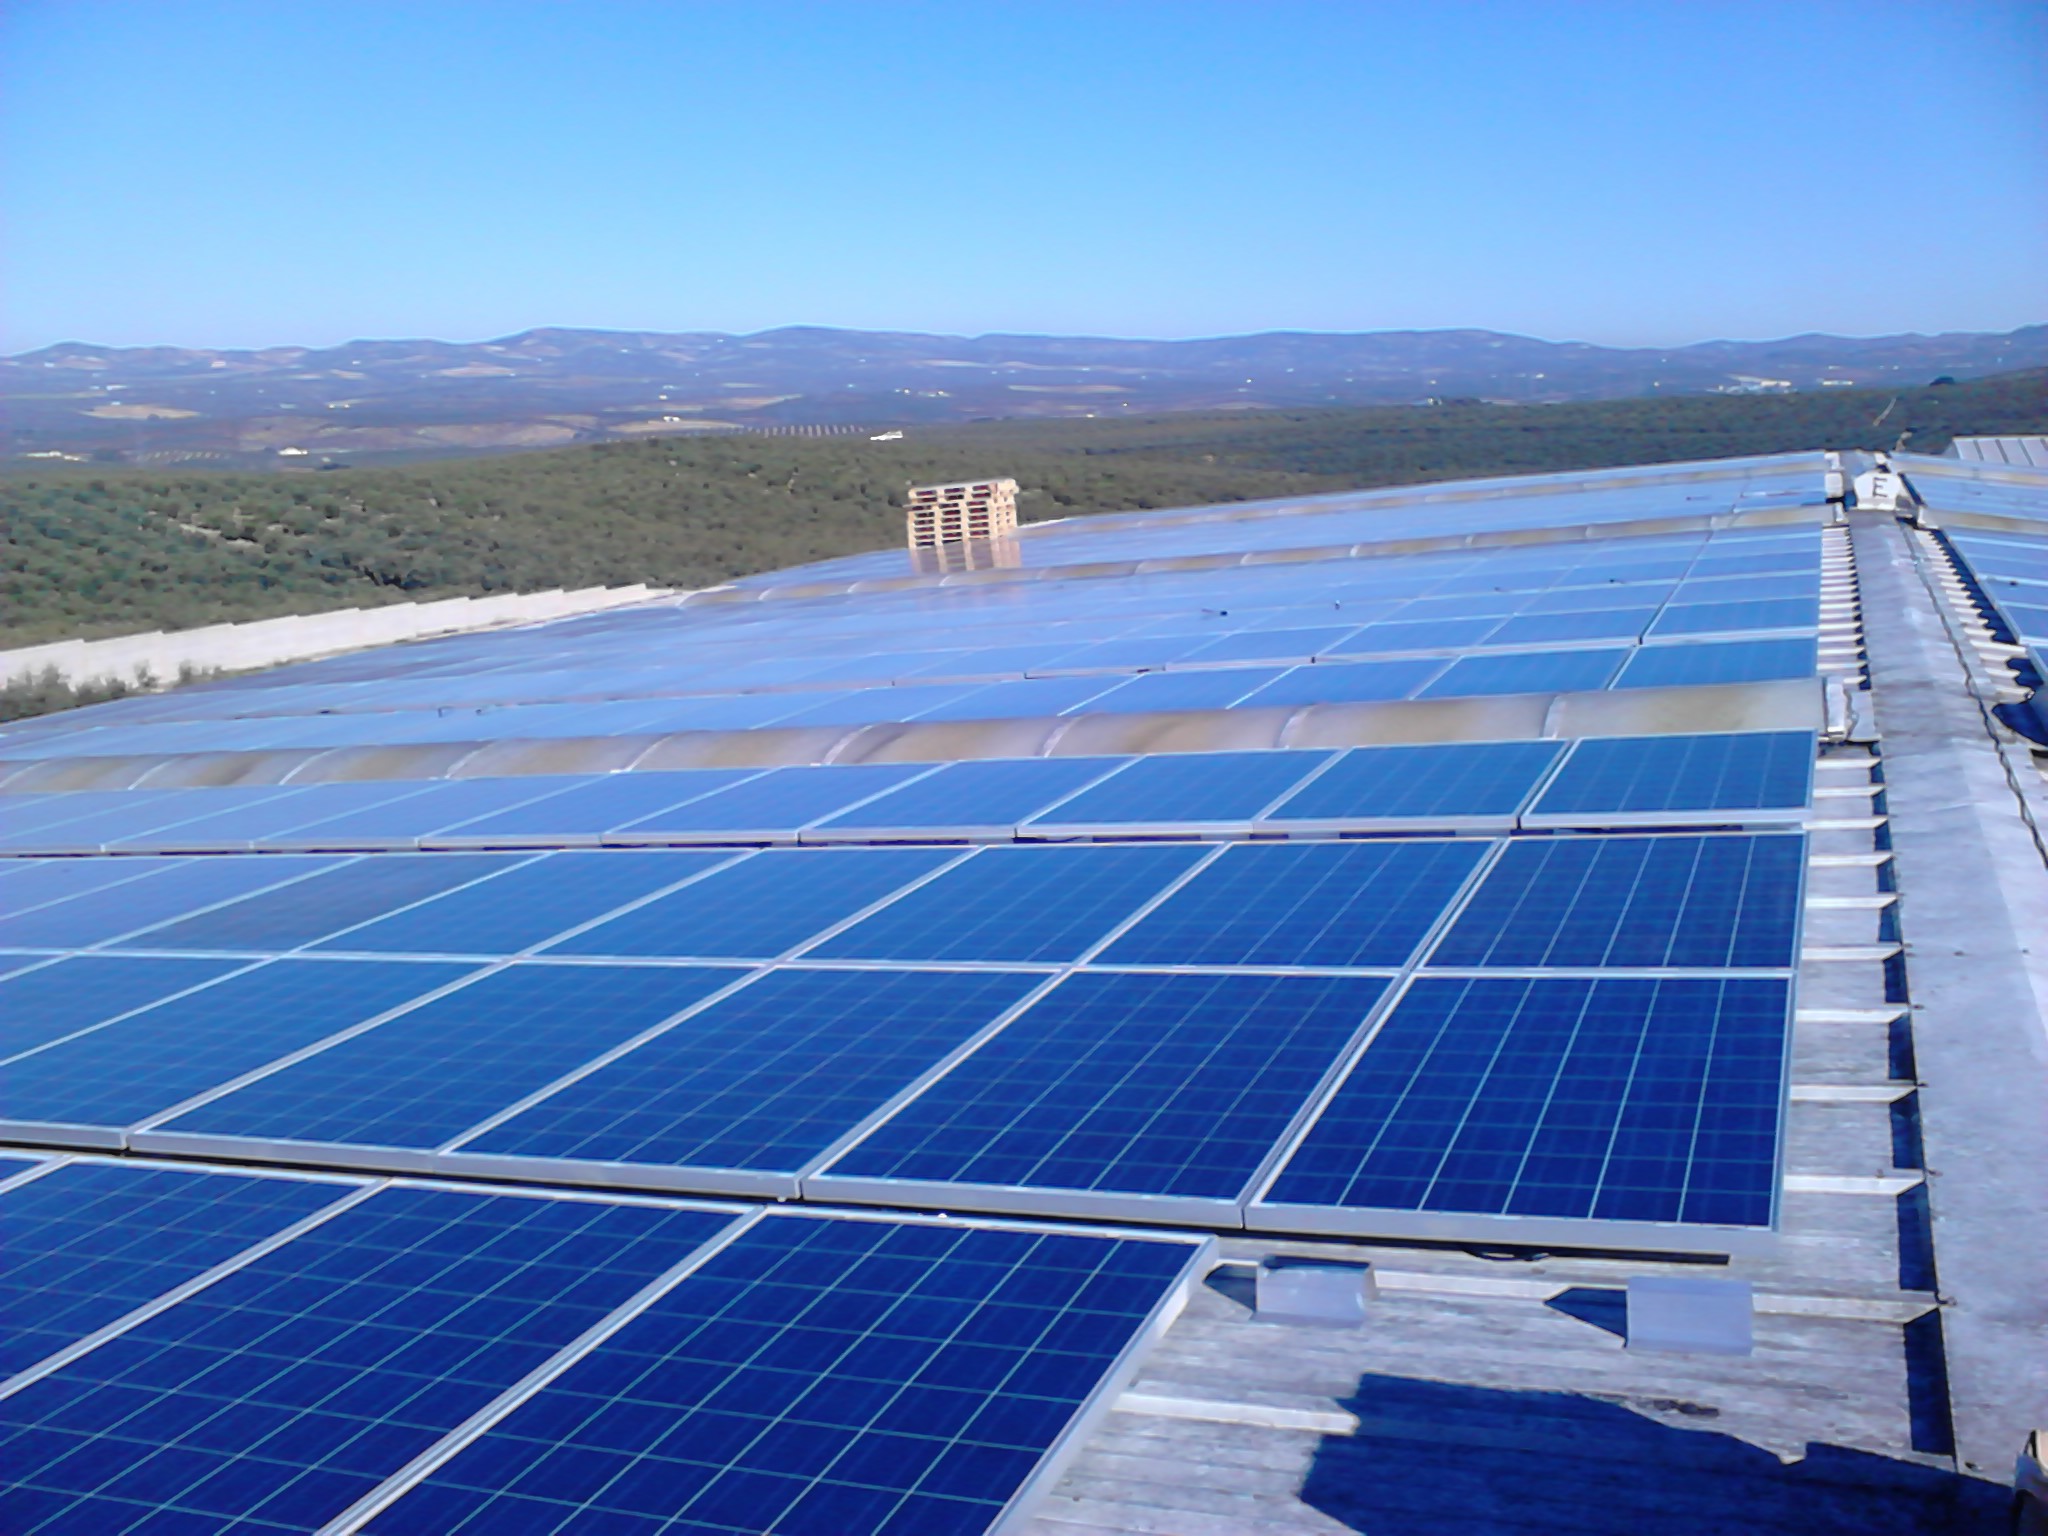 Placas fotovoltaicas en tejado nave industrial